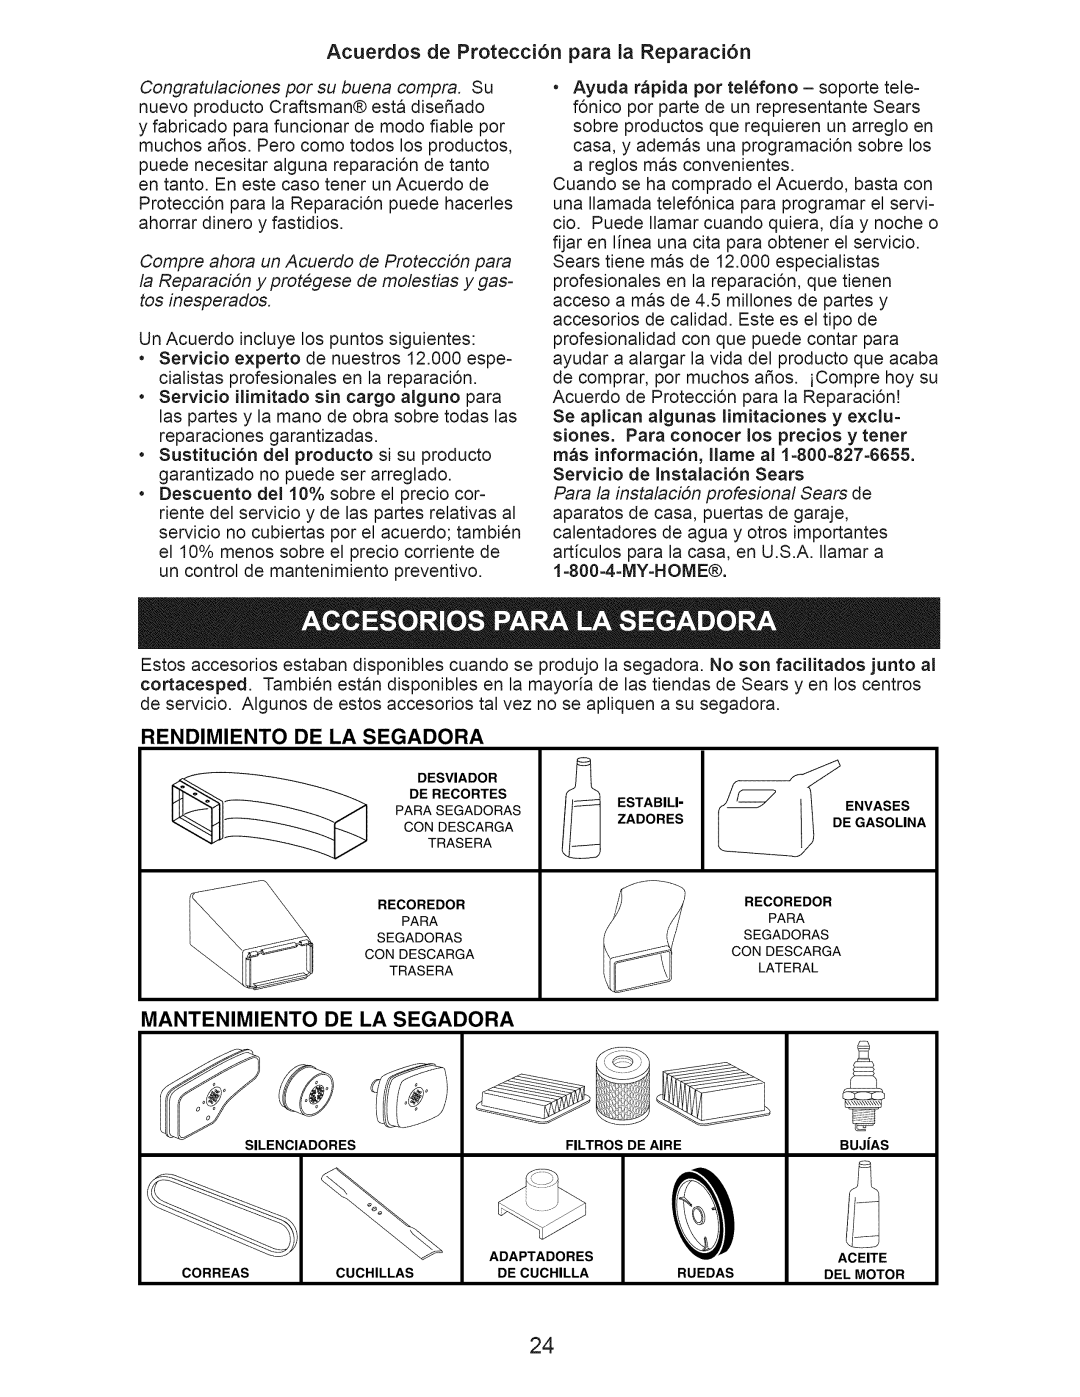 Craftsman 917.376530 Acuerdos de Protecci6n para la Reparaci6n, Rendimiento De La Segadora, Mantenimiento De La Segadora 